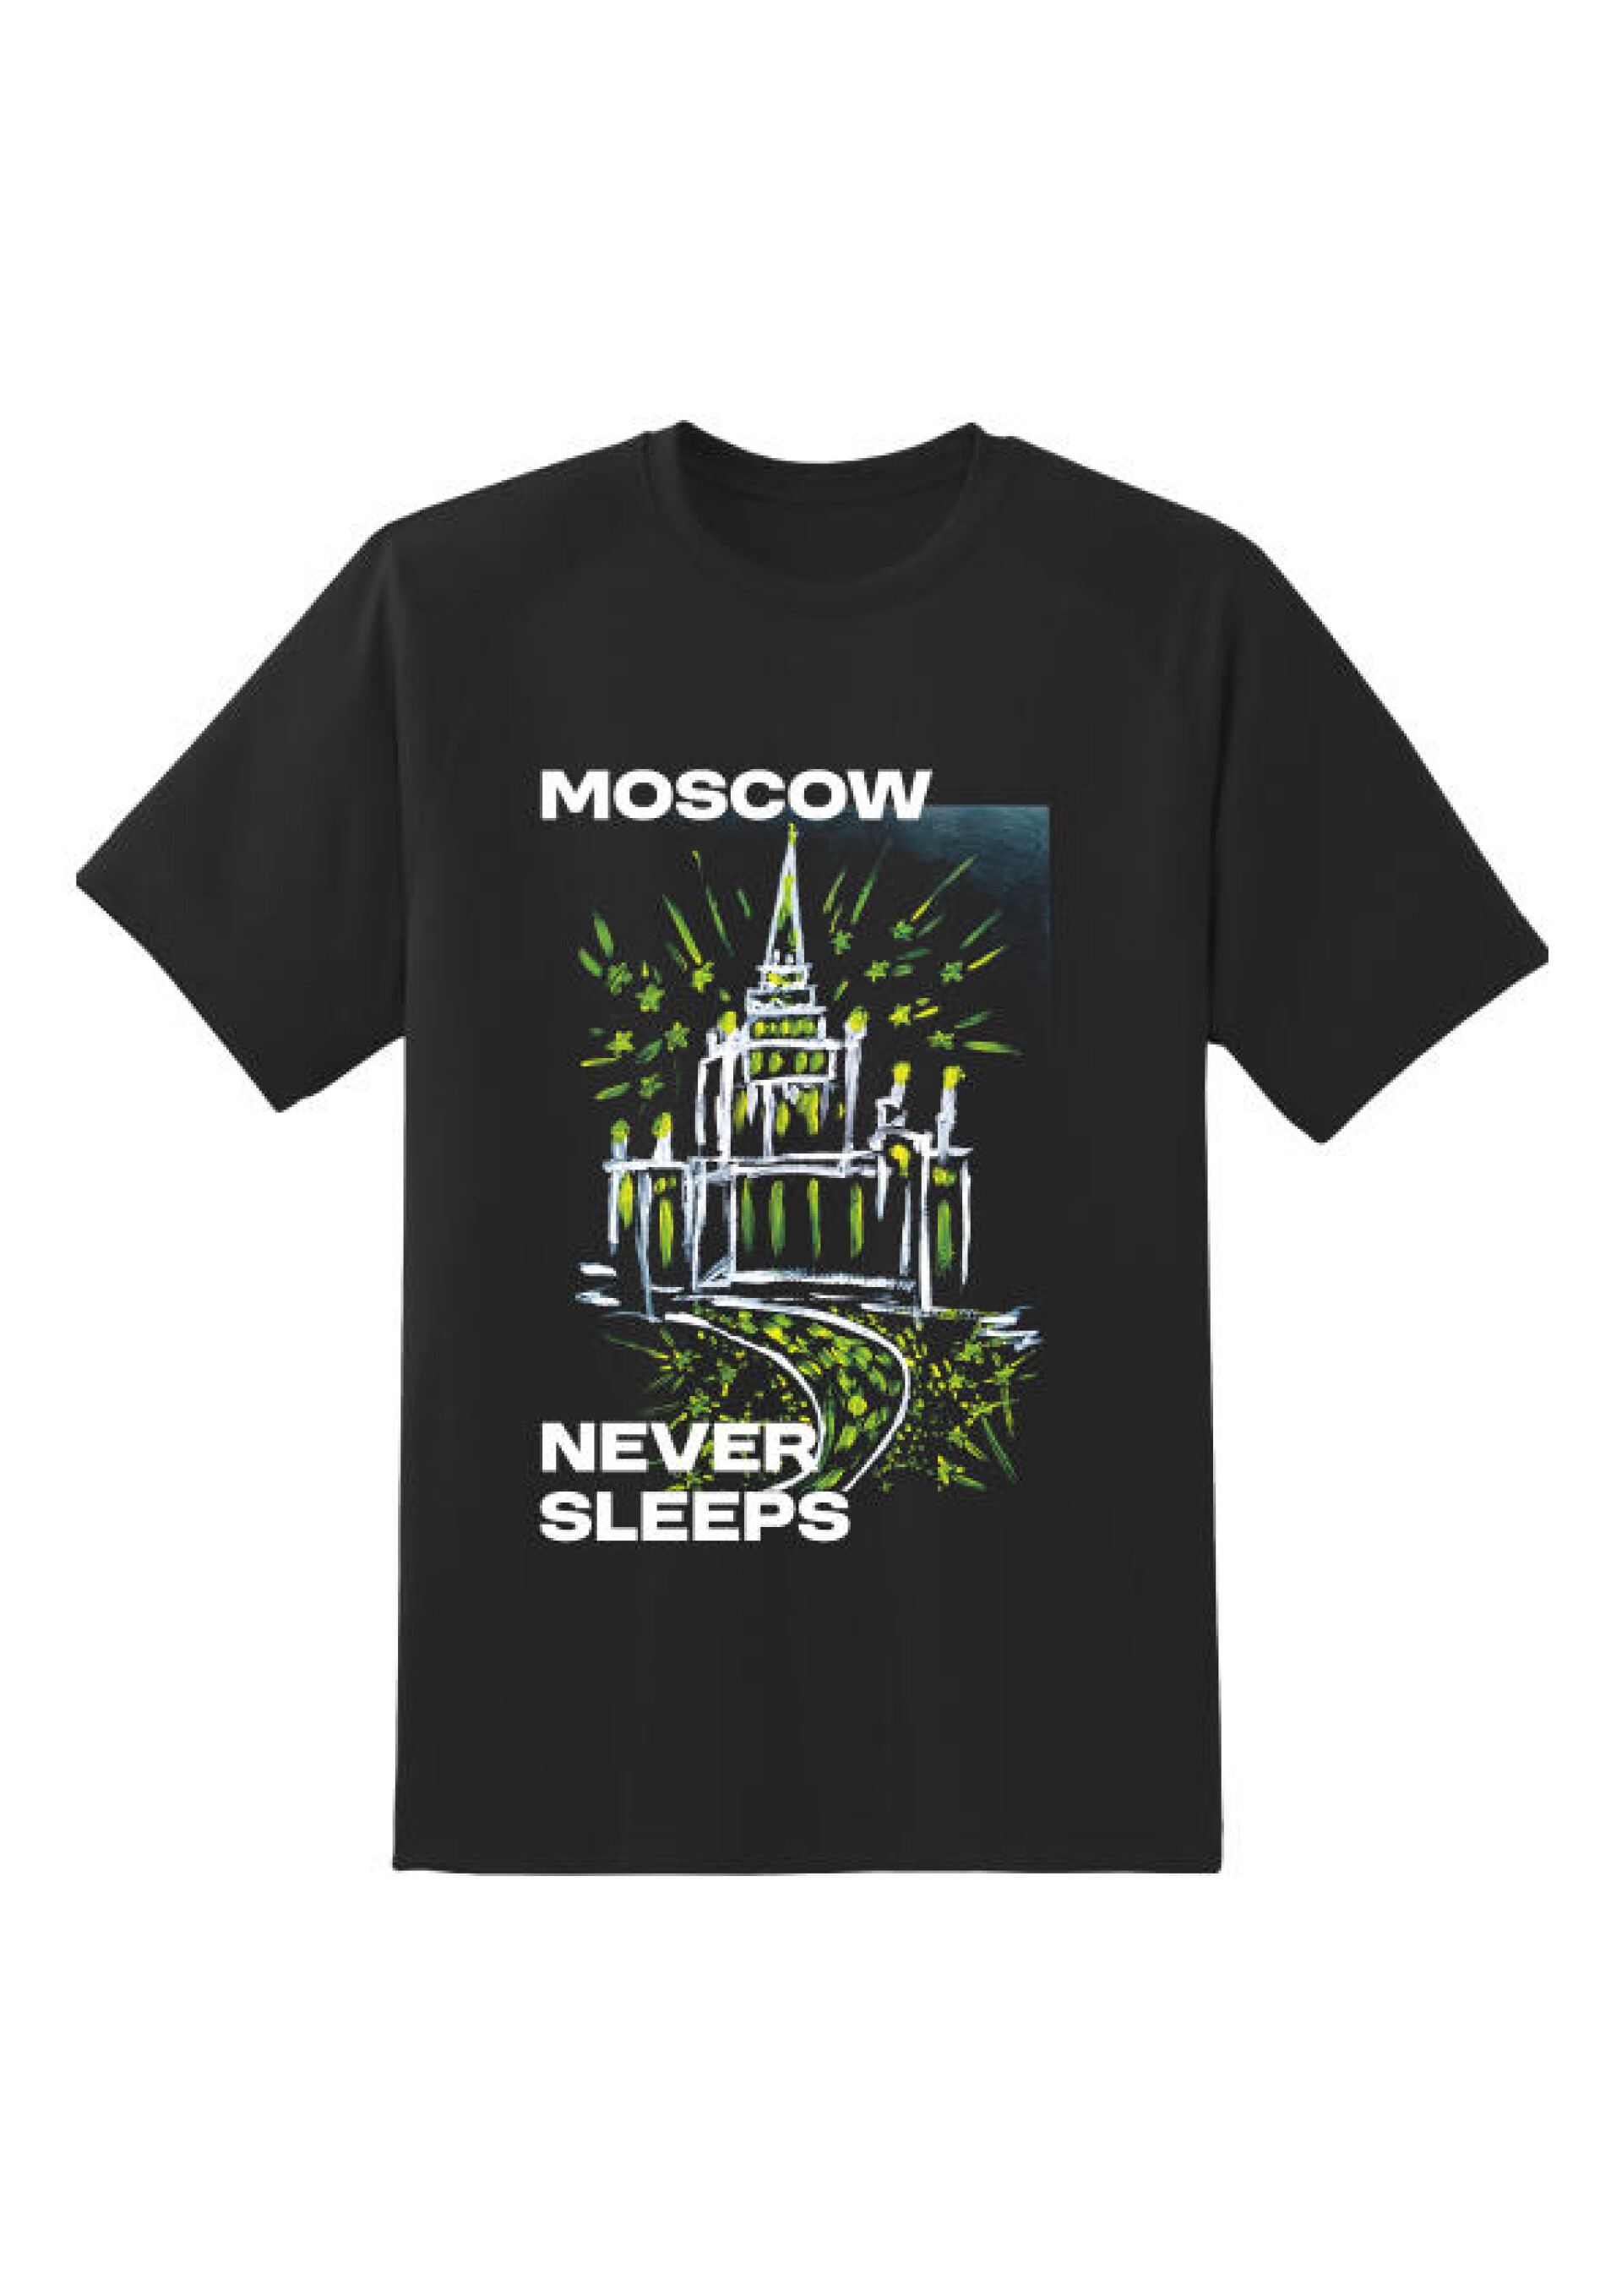 Moscow never sleeps - CO:CREATE 2